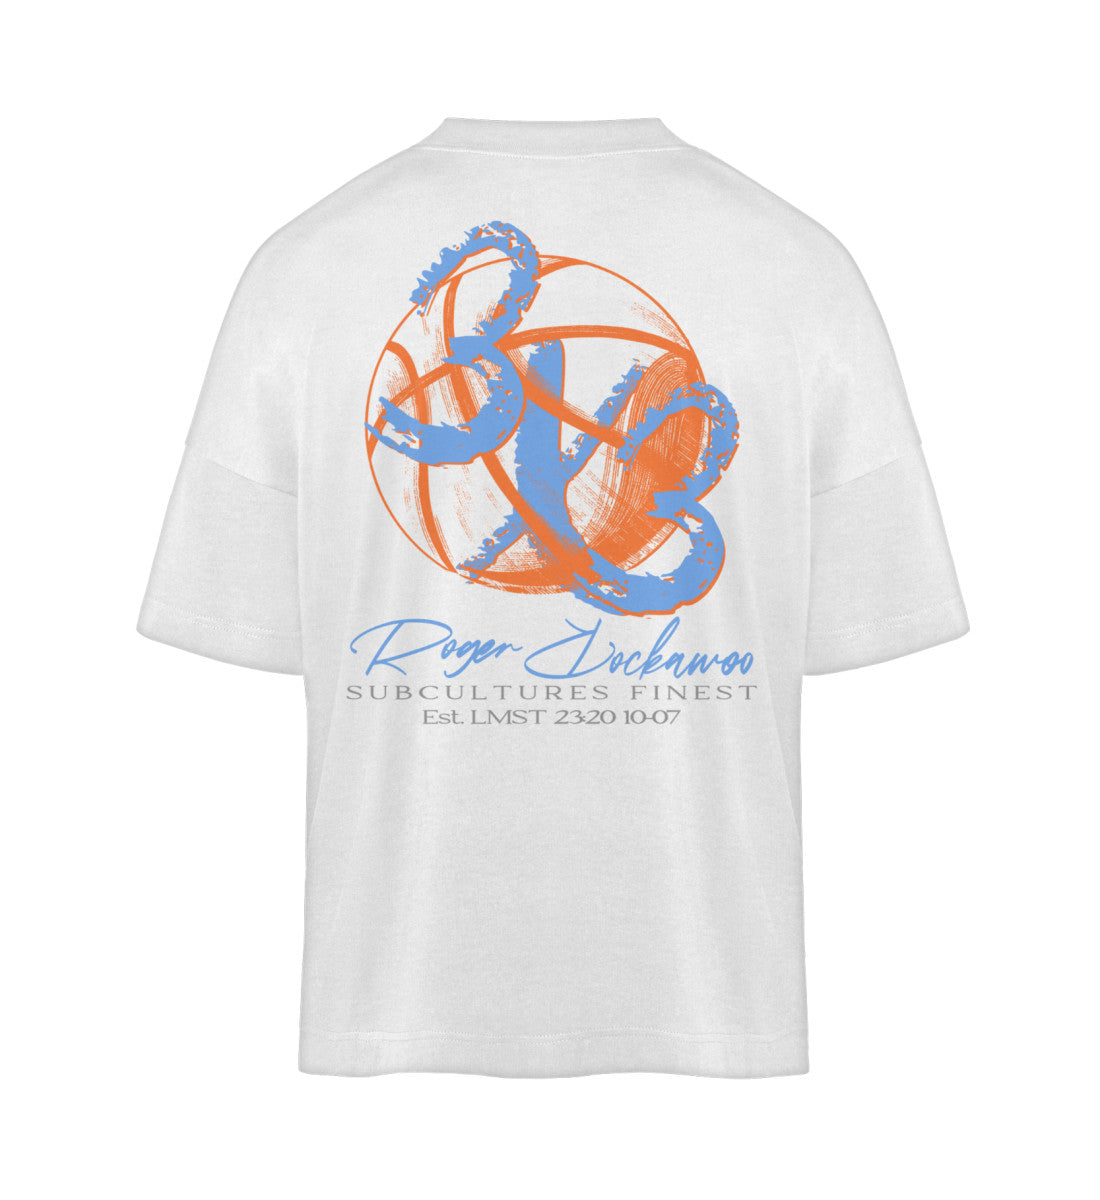 Weißes T-Shirt Unisex Oversize Fit für Frauen und Männer bedruckt mit dem Design der Roger Rockawoo Kollektion Basketball 3X3 Check Ball